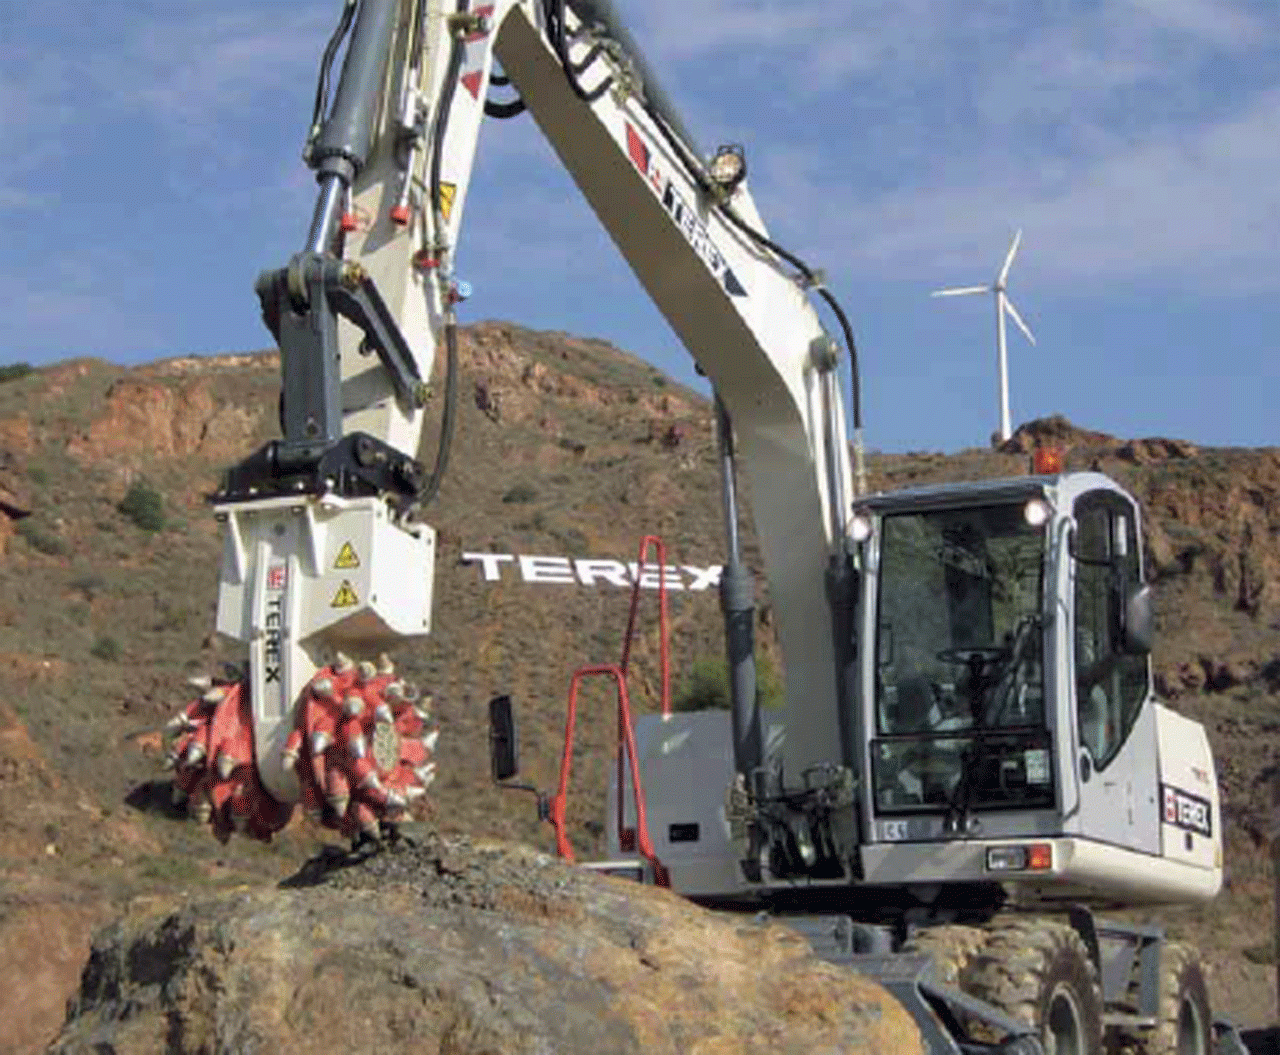 terex-ws-120md-160-hyd-hp-dual-drum-grinder-30-50-ton-excavator-big-21